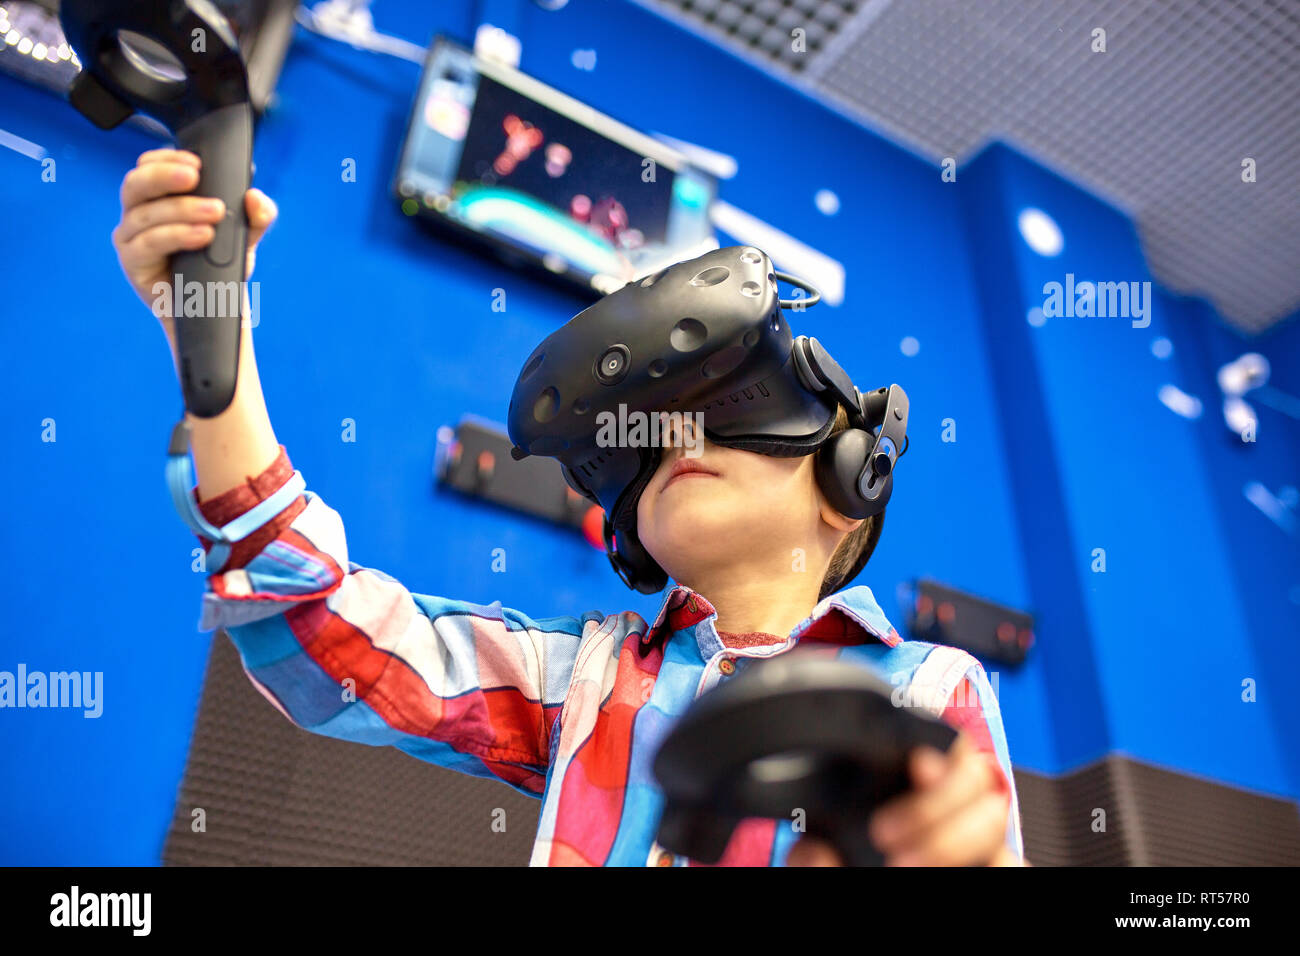 La technologie moderne, les jeux et les gens concept - garçon dans casque  de réalité virtuelle ou des lunettes 3d jeu vidéo jeu Photo Stock - Alamy